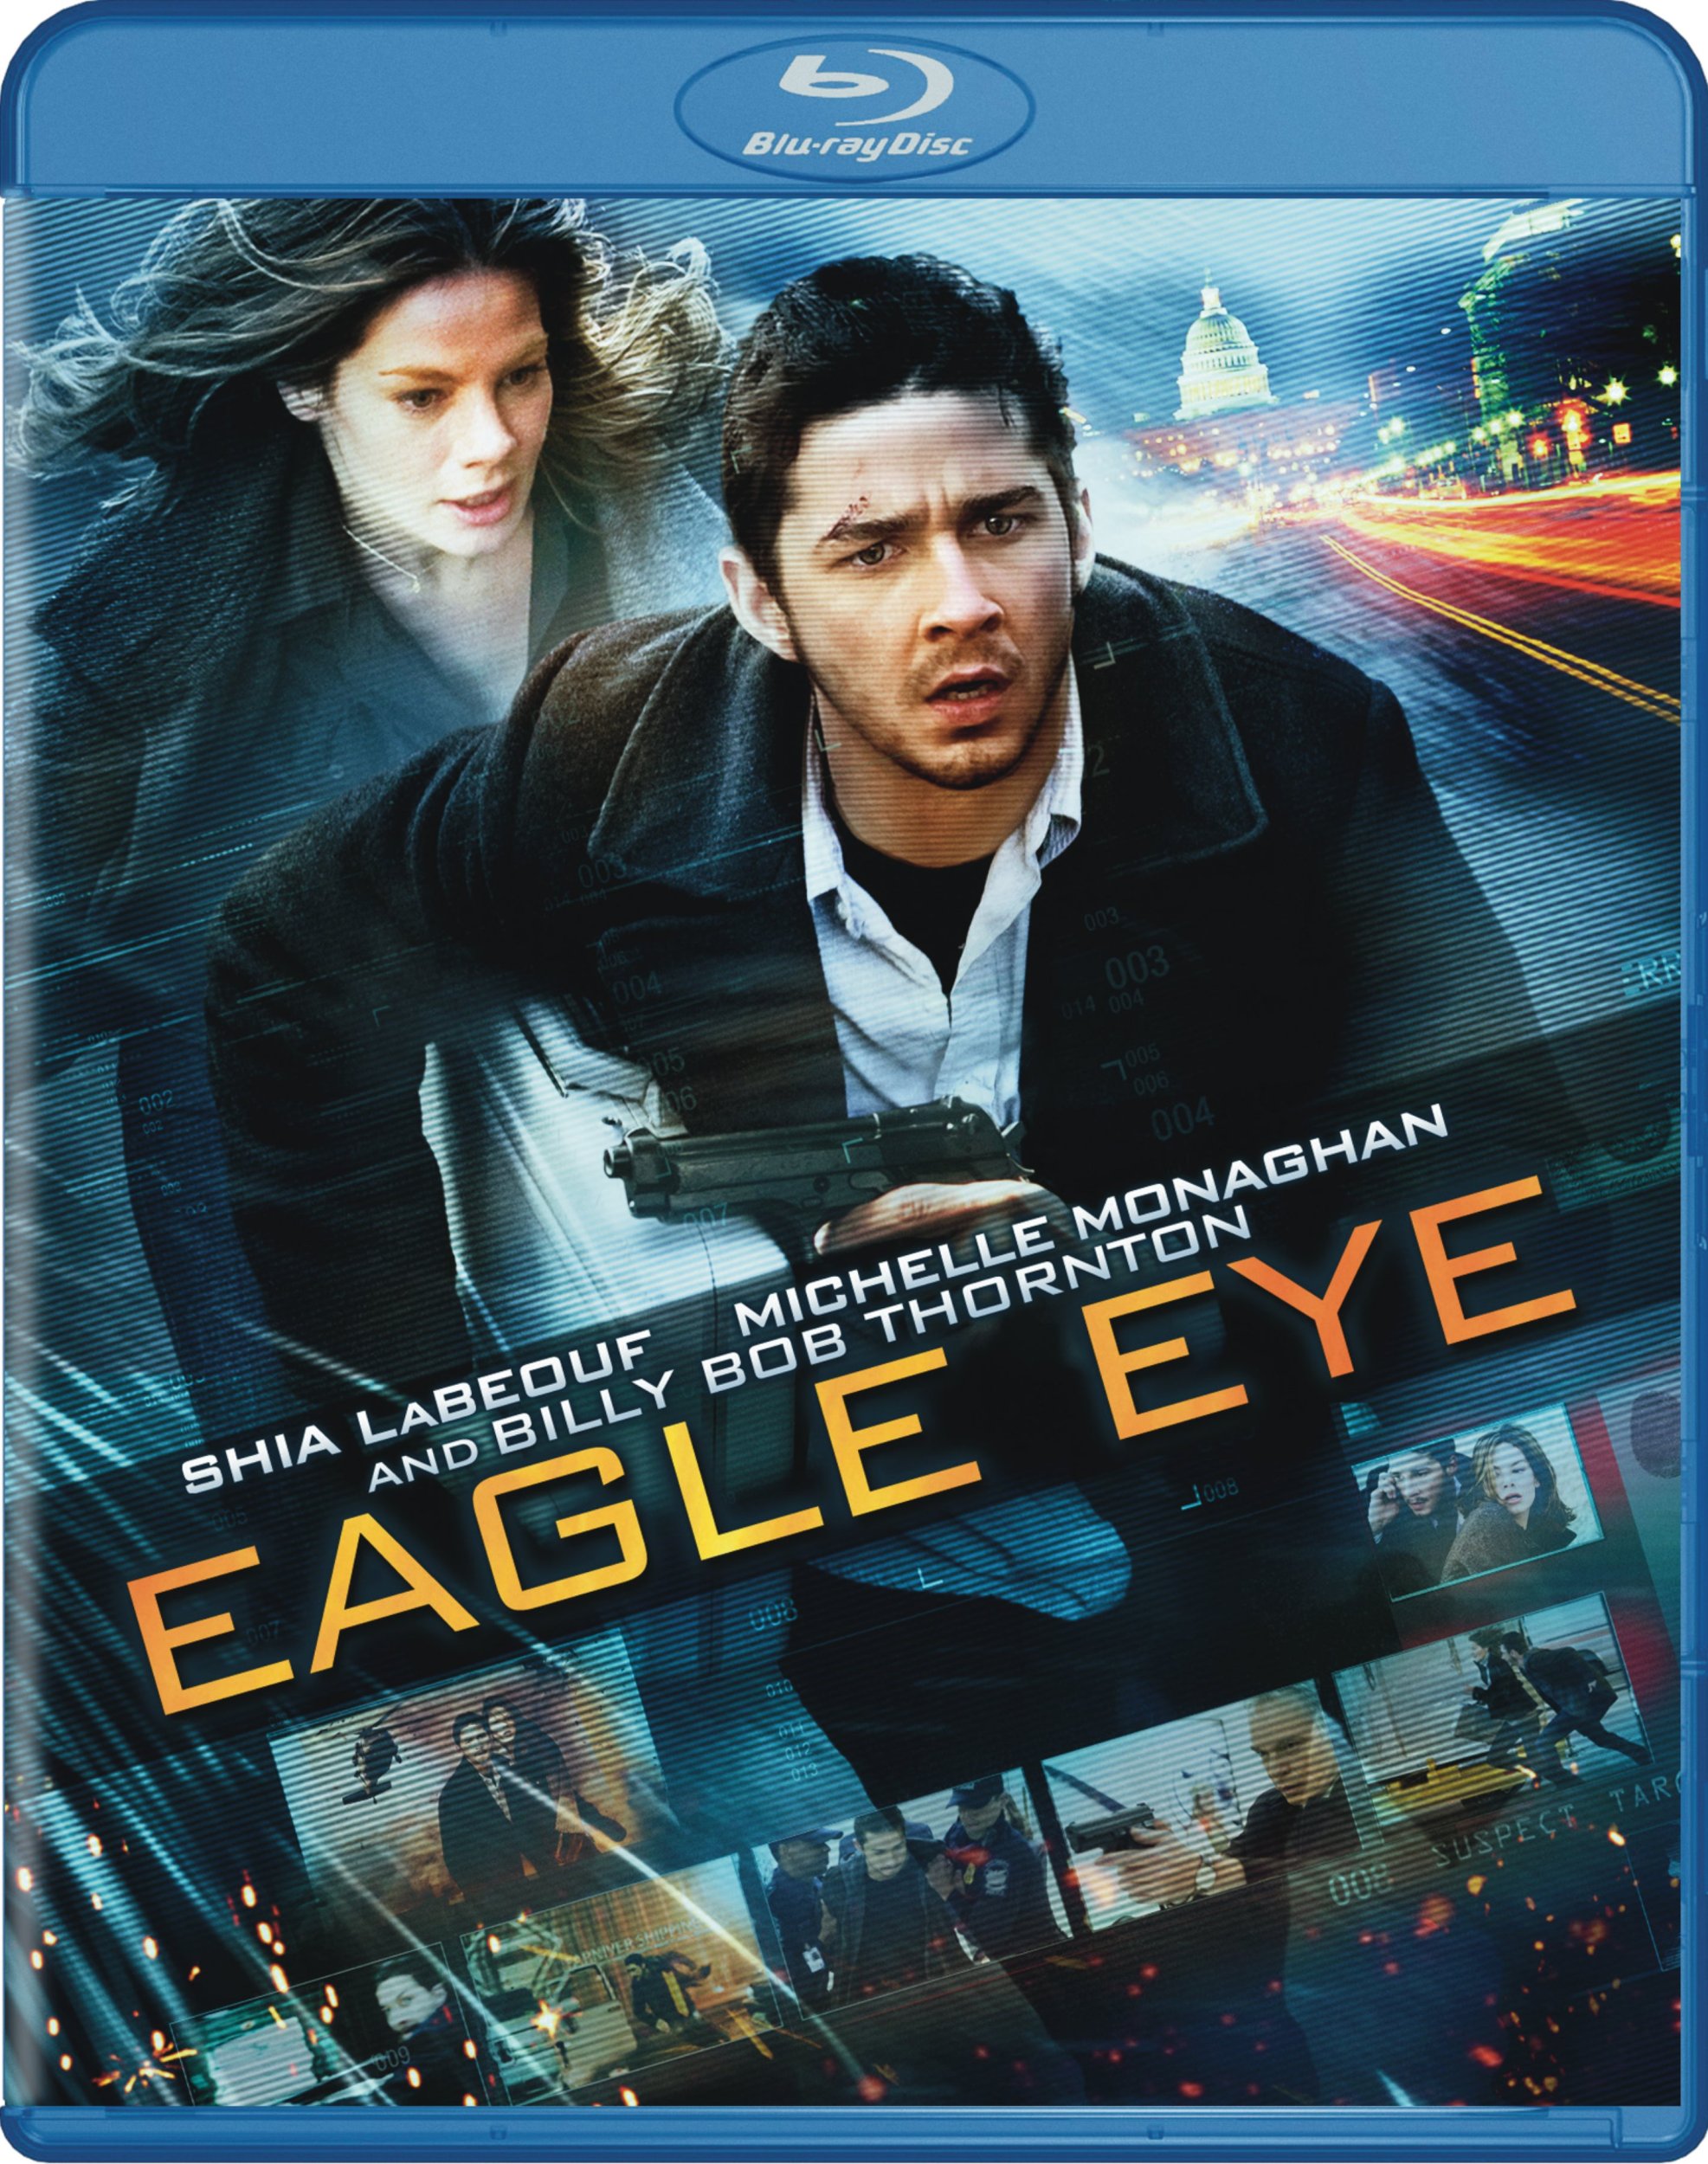 Eagle Eye DVD Release Date December 27, 20081973 x 2500